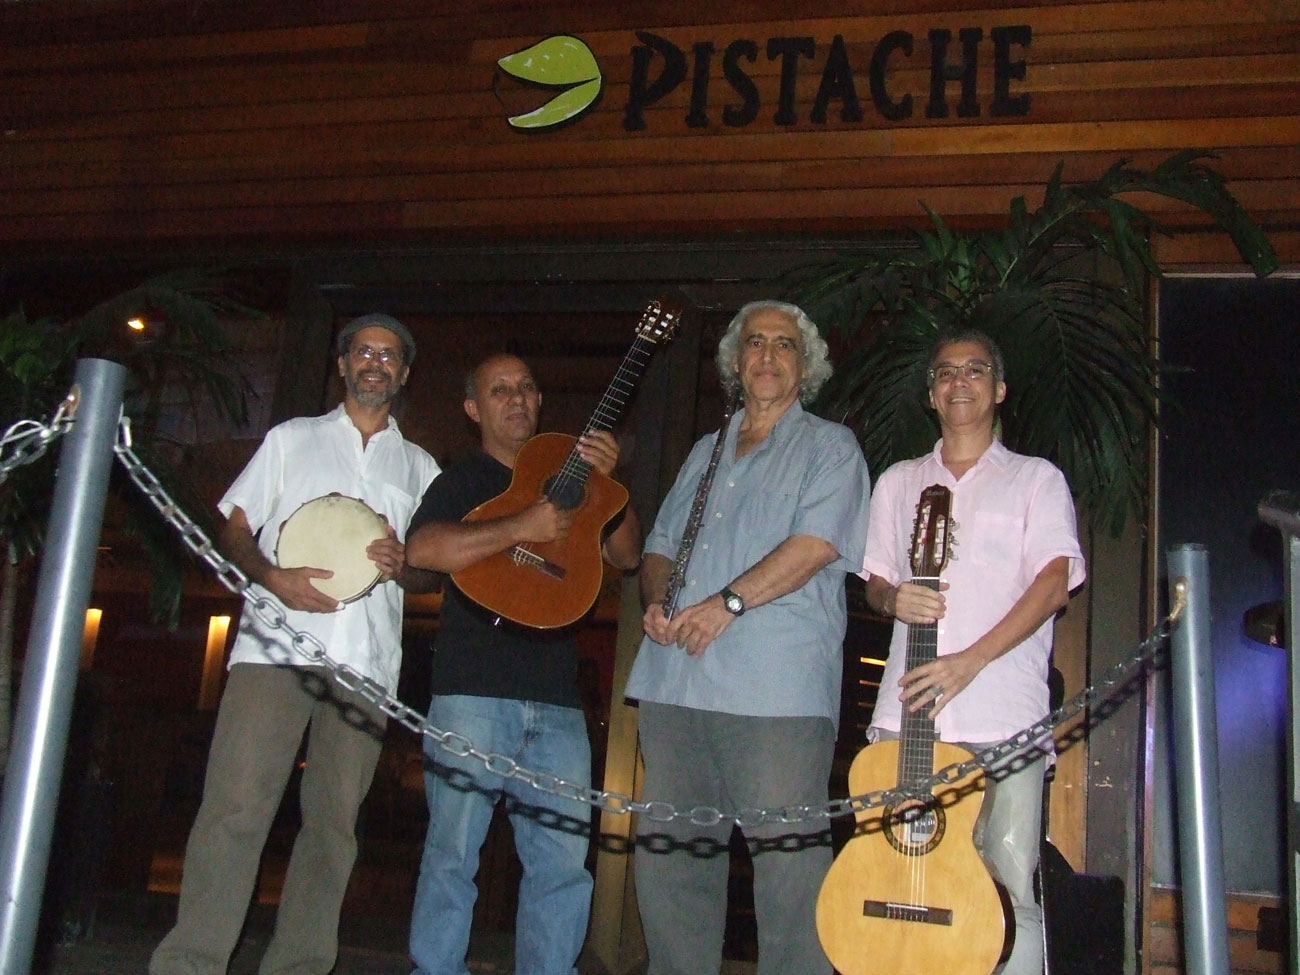 Restaurante Pistache Botafogo - Evento particular choro na praça música ao vivo